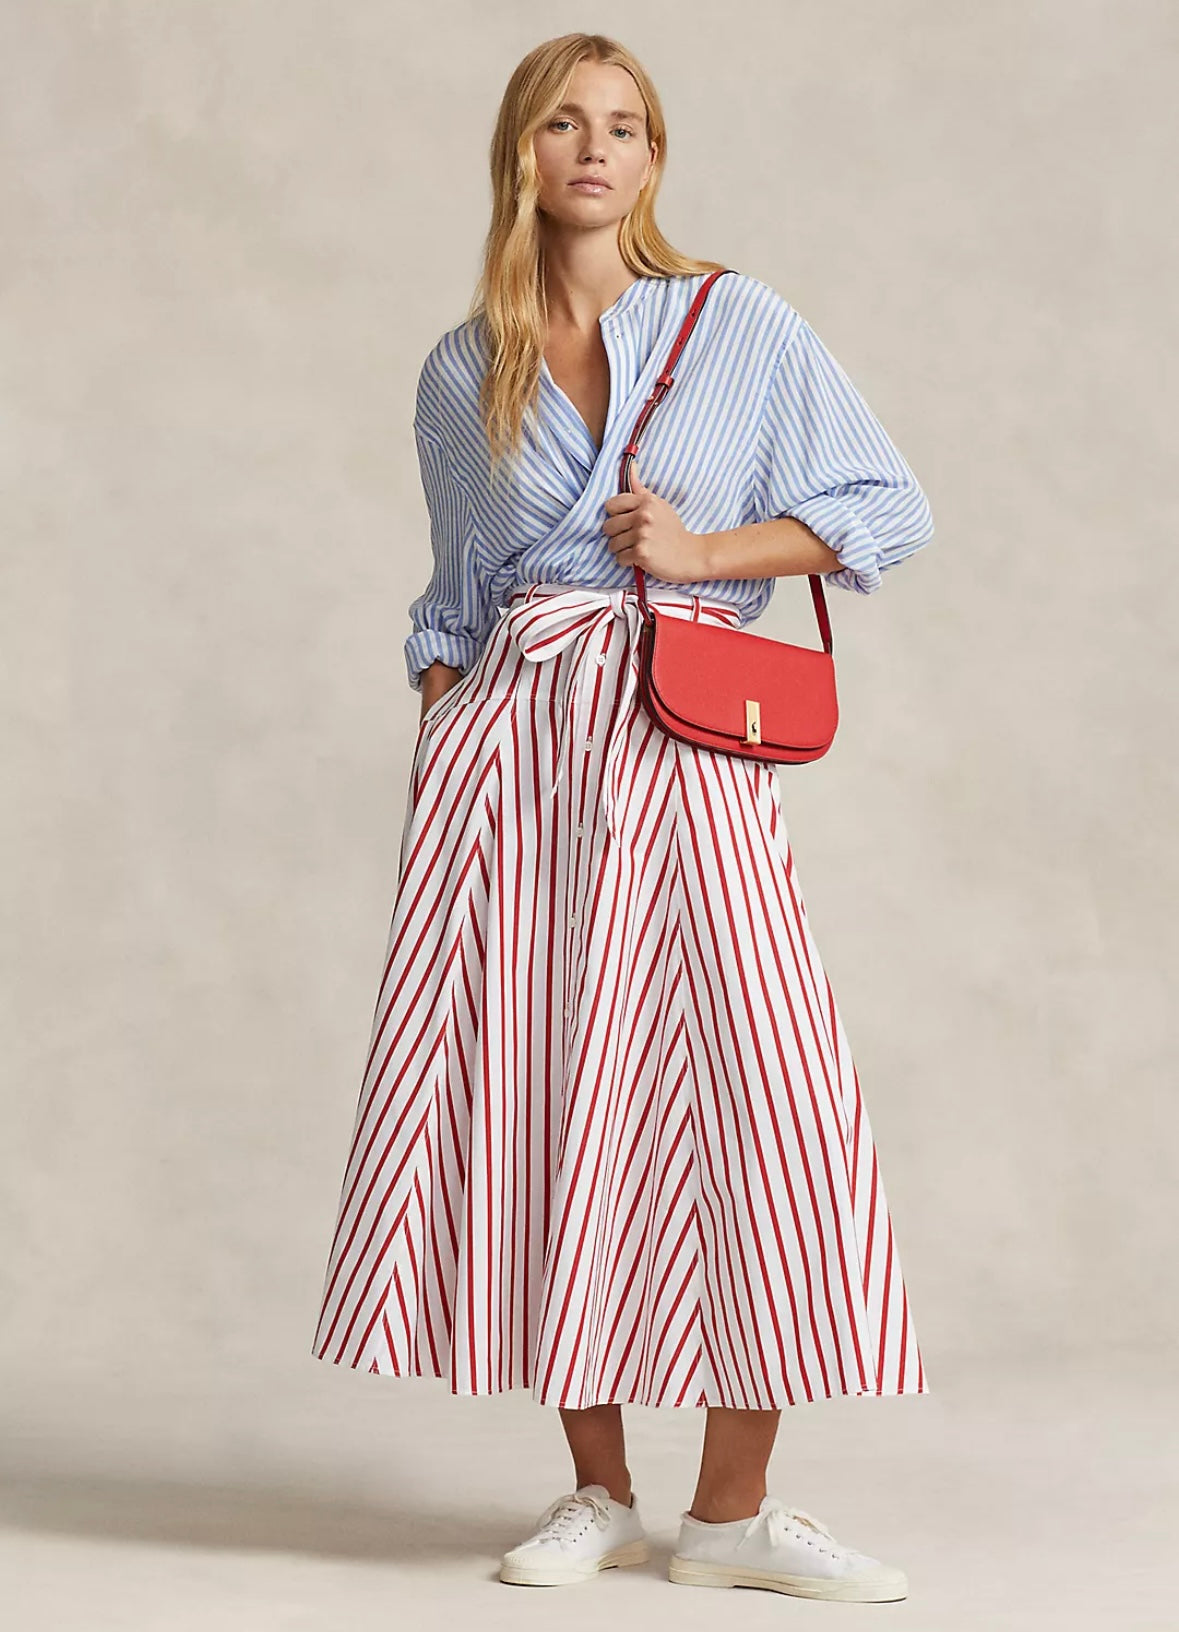 Polo Ralph Lauren skirt - White/Red Stripe